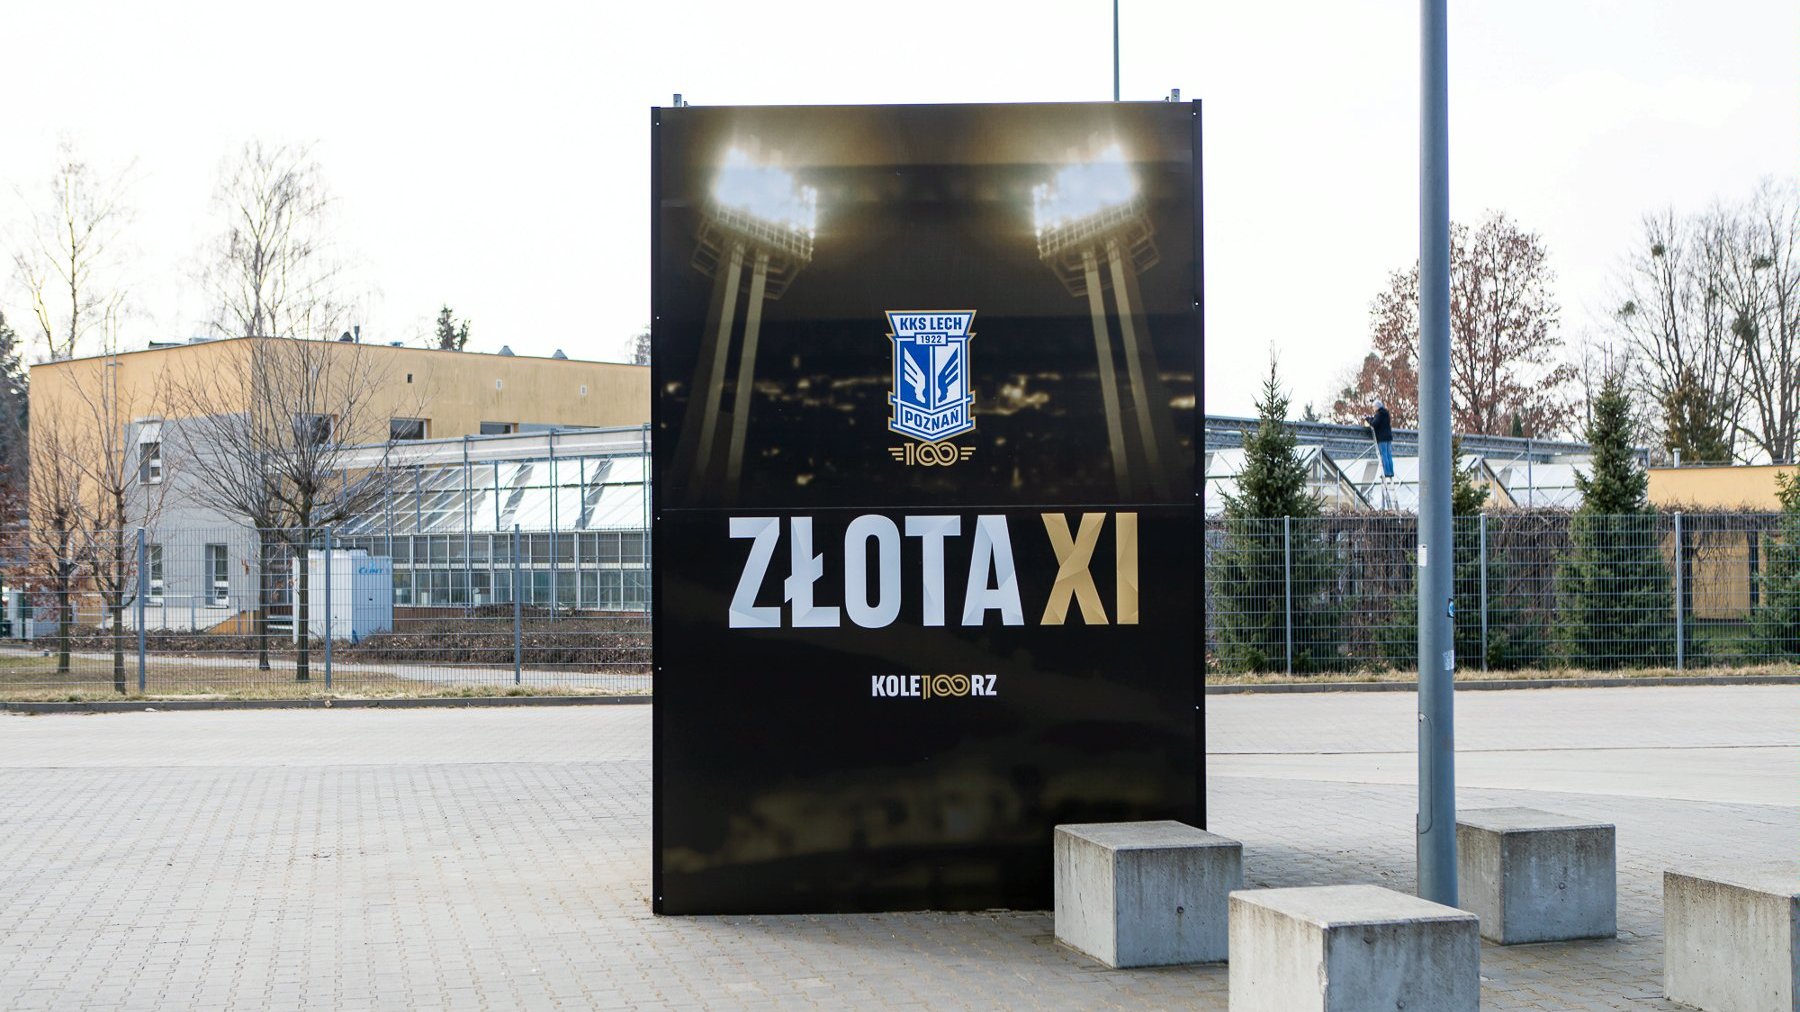 Spcjelna kostka pod stadionem przy ul. Bułgraskiej